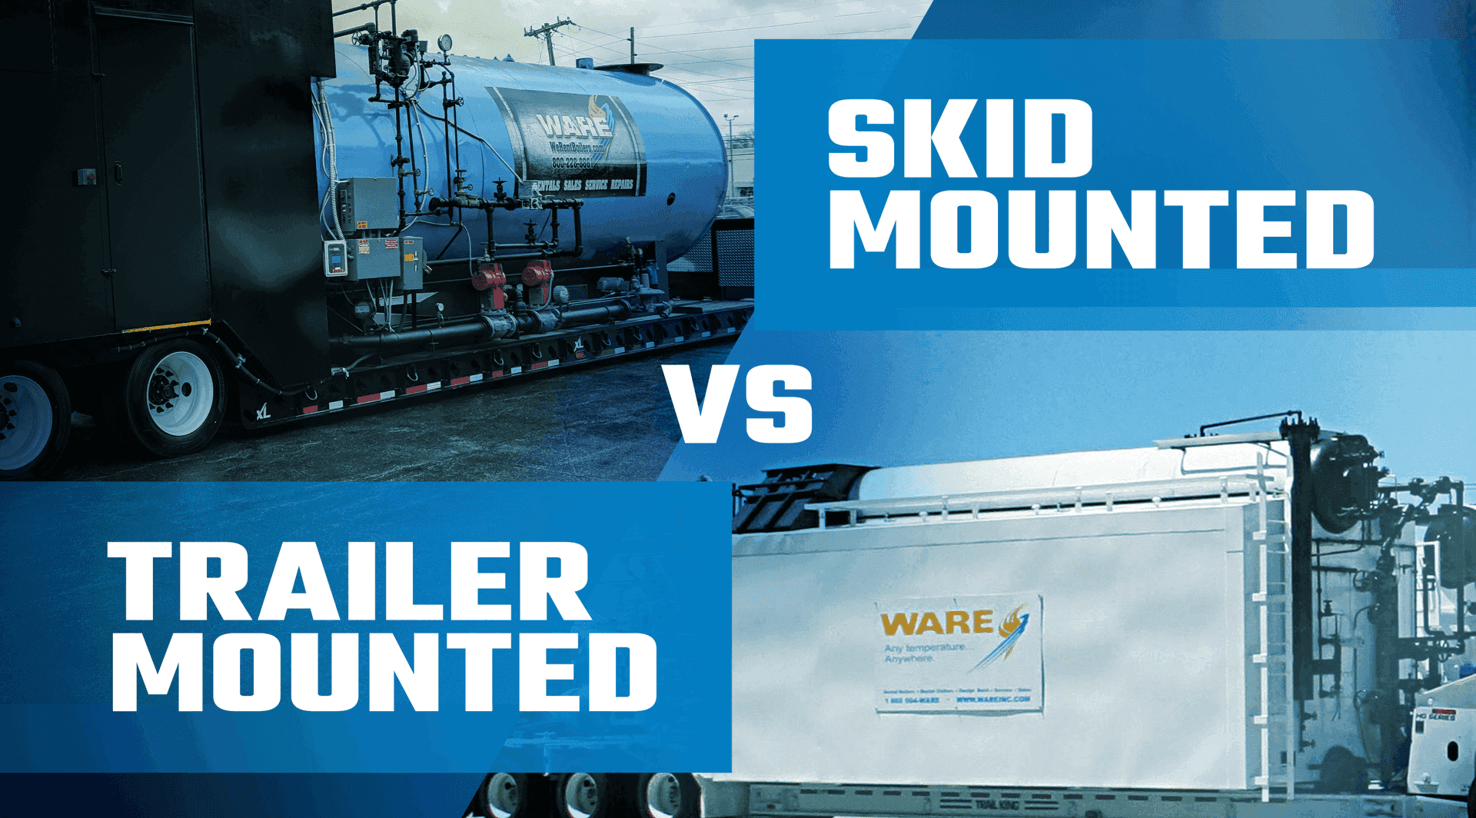 Skid-Mounted Boiler Rentals vs. Trailer-Mounted Boiler Rentals